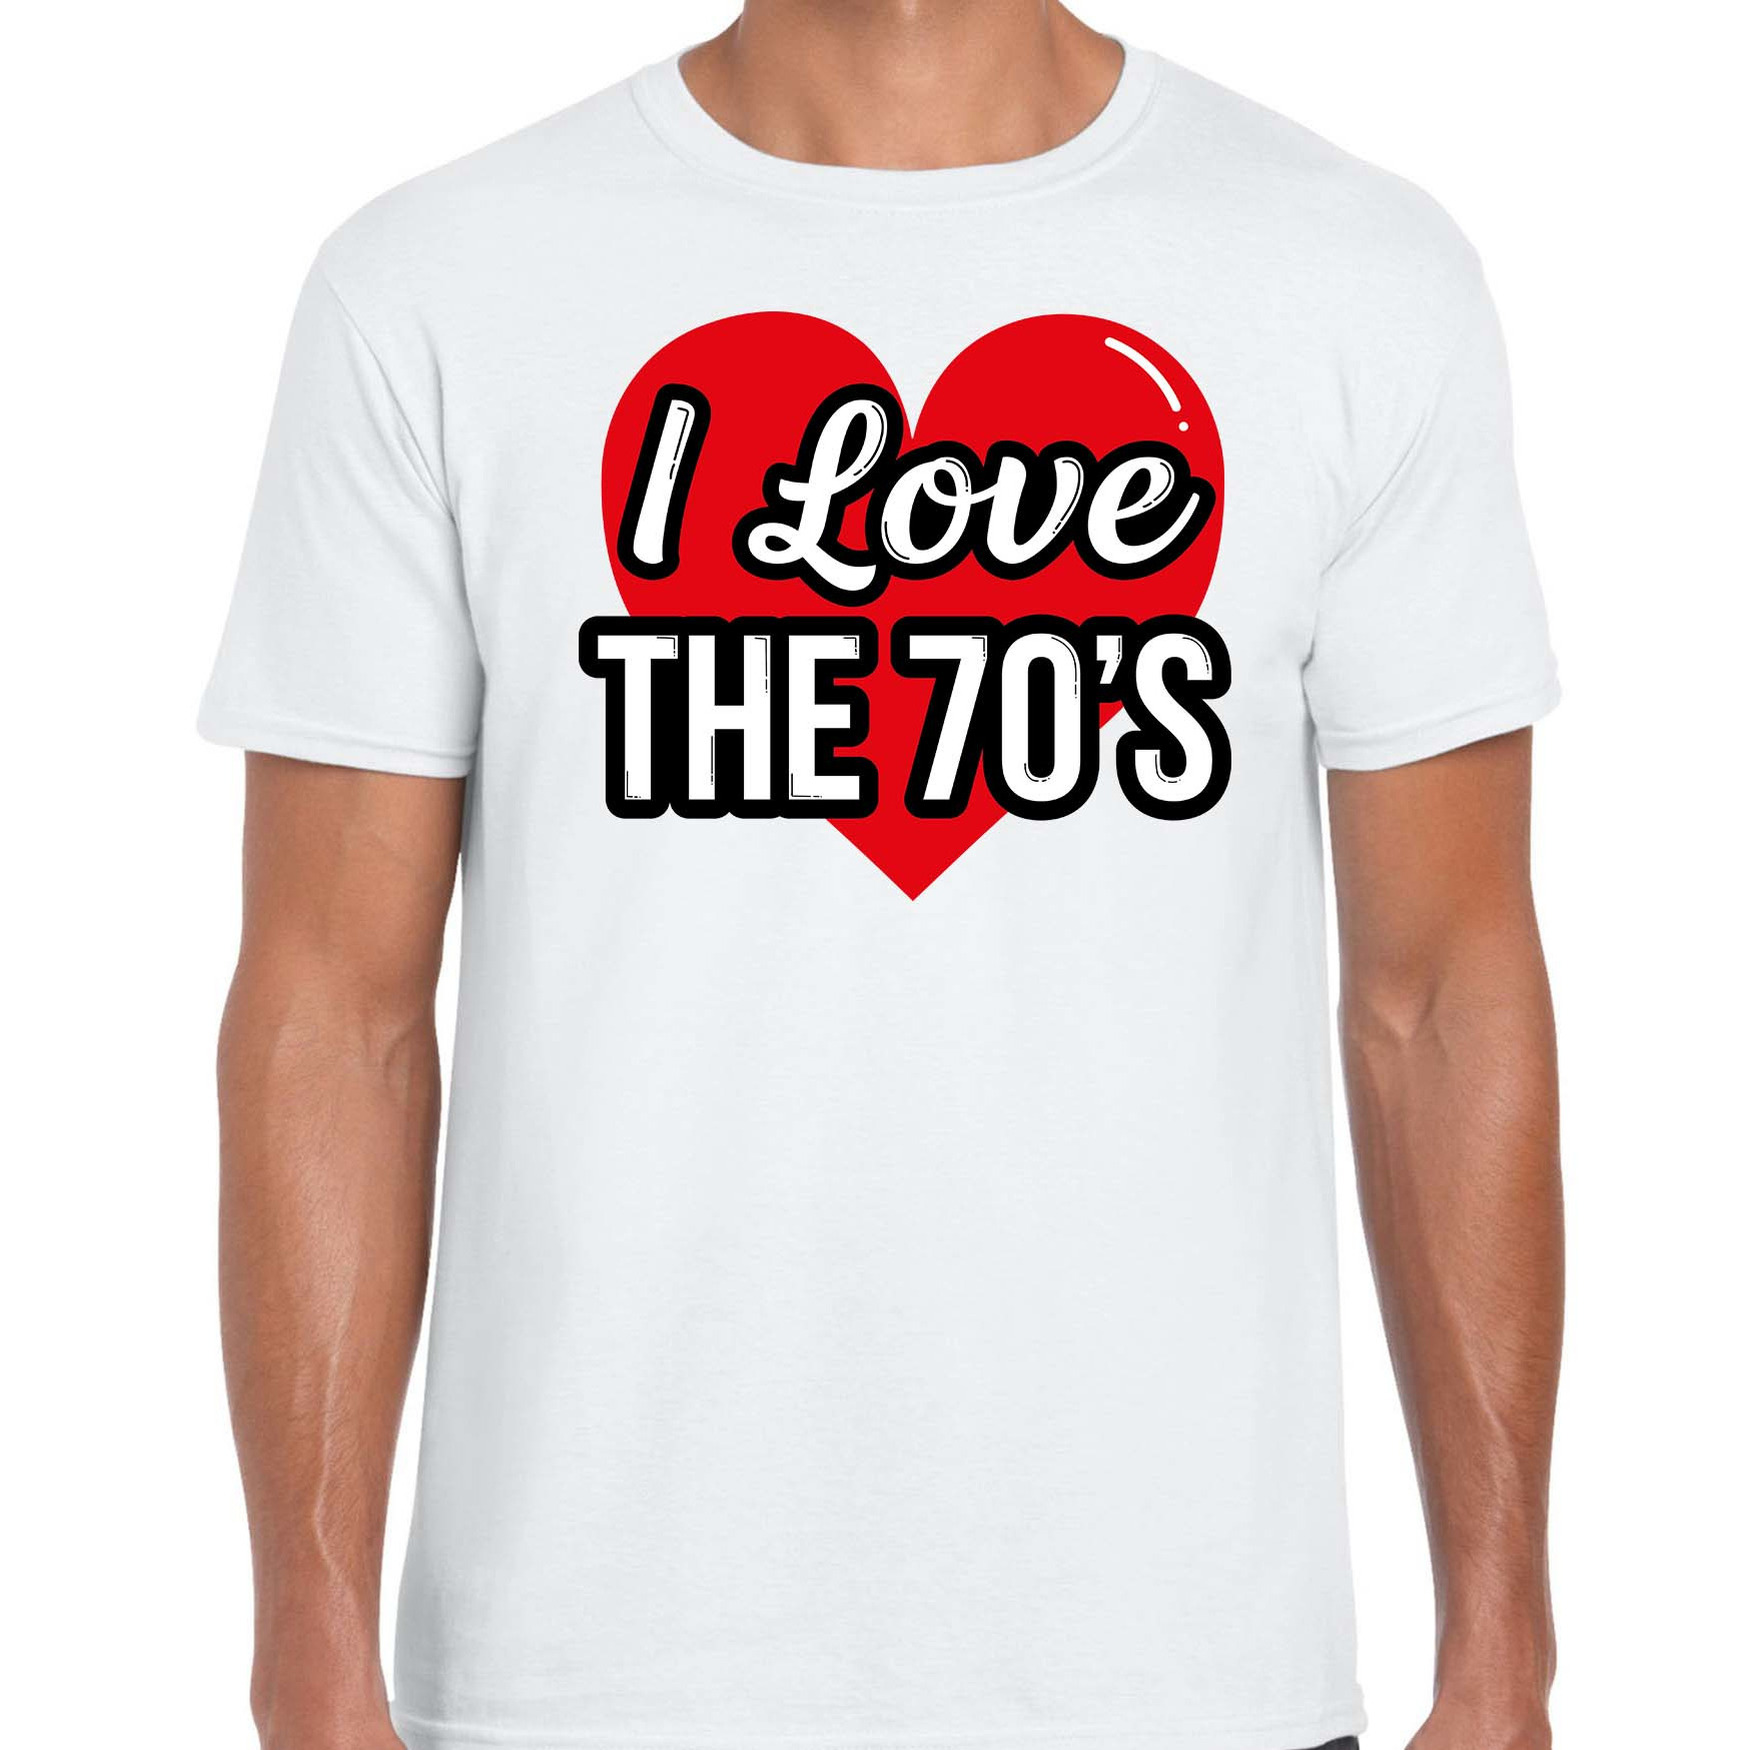 I love 70s verkleed t-shirt wit voor heren 70s party verkleed outfit